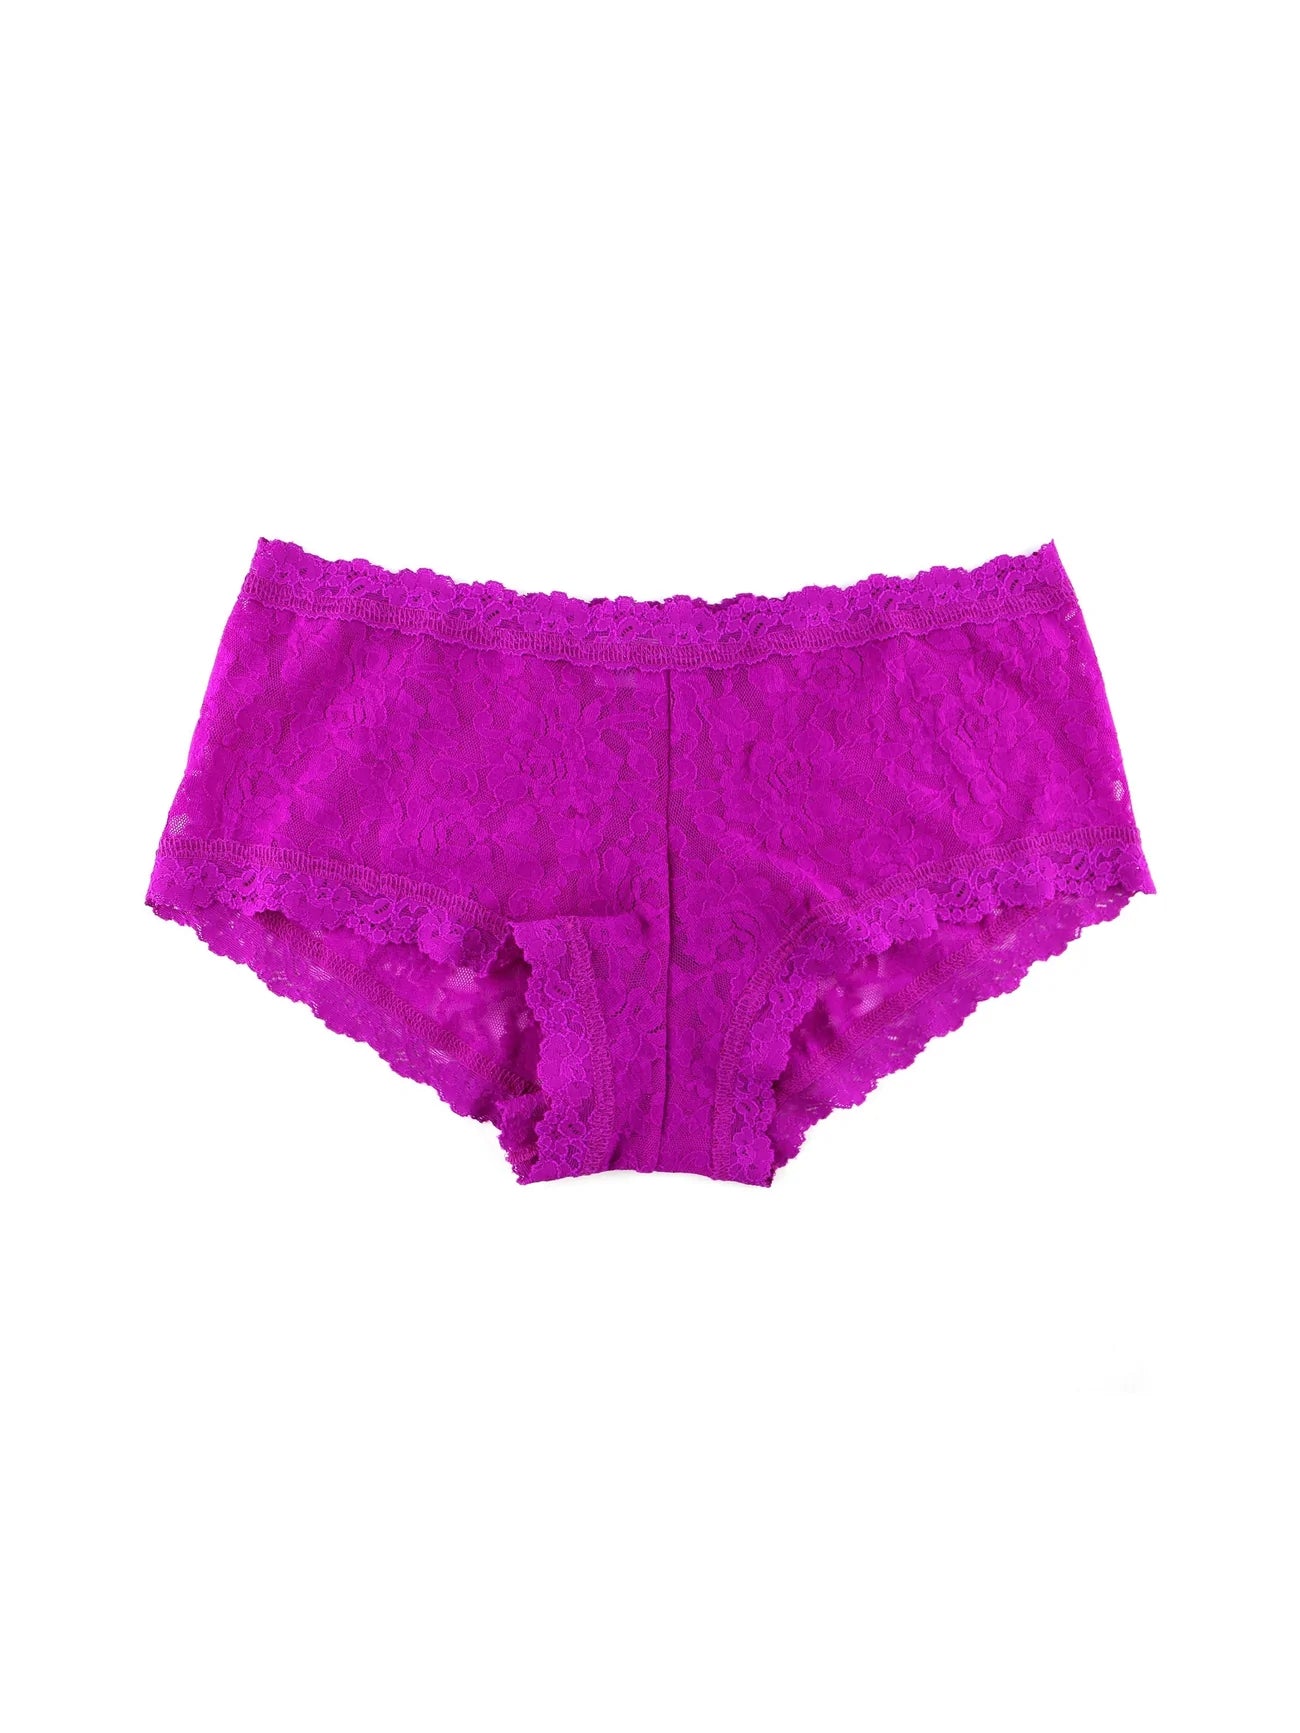 MELANIE Pink Boyshorts, Laced Pajama Shorts, French Knickers 